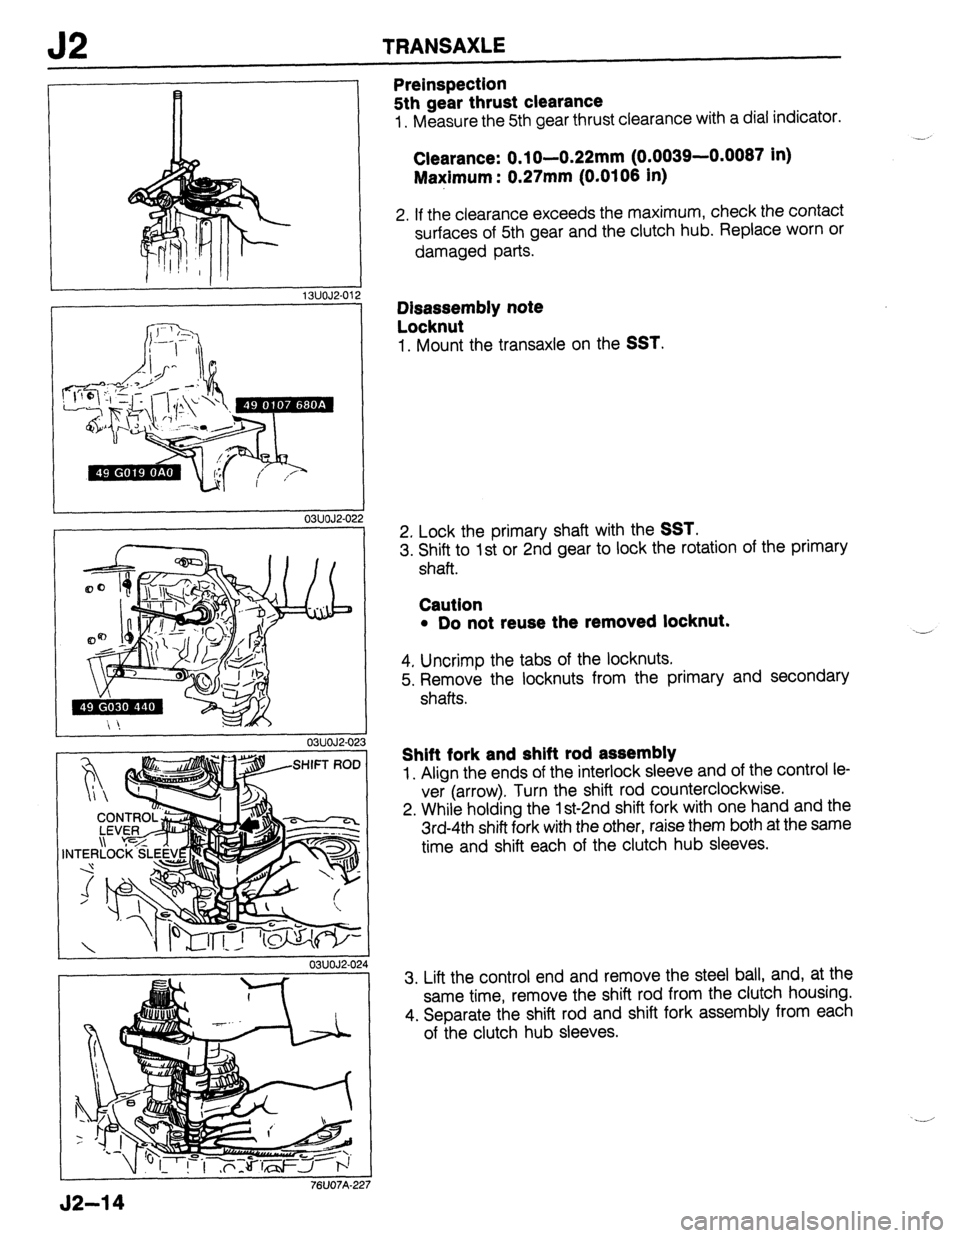 MAZDA 323 1989  Factory Repair Manual J2 TRANSAXLE 
13UOJ2.01 
03UOJ2-0: 
03UOJ2-0: 
. - 
03UOJ2-0 
76UO7A-22 2 
!2 
!3 
1 
. 
24 
7 
Preinspection 
5th gear thrust clearance 
1. Measure the 5th gear thrust clearance with a dial indicator